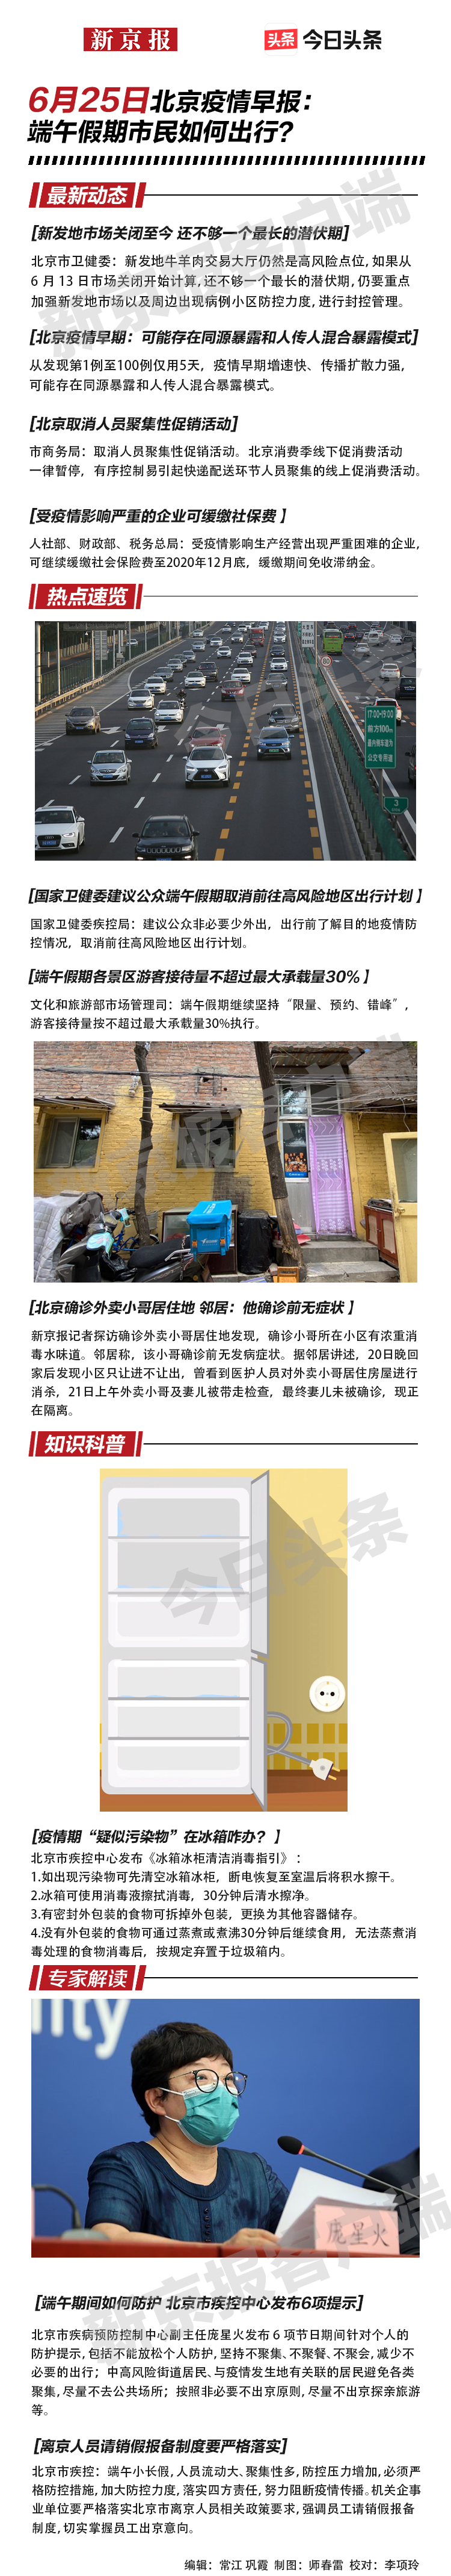 一图速览 6月25日北京疫情早报 综合 新京报网